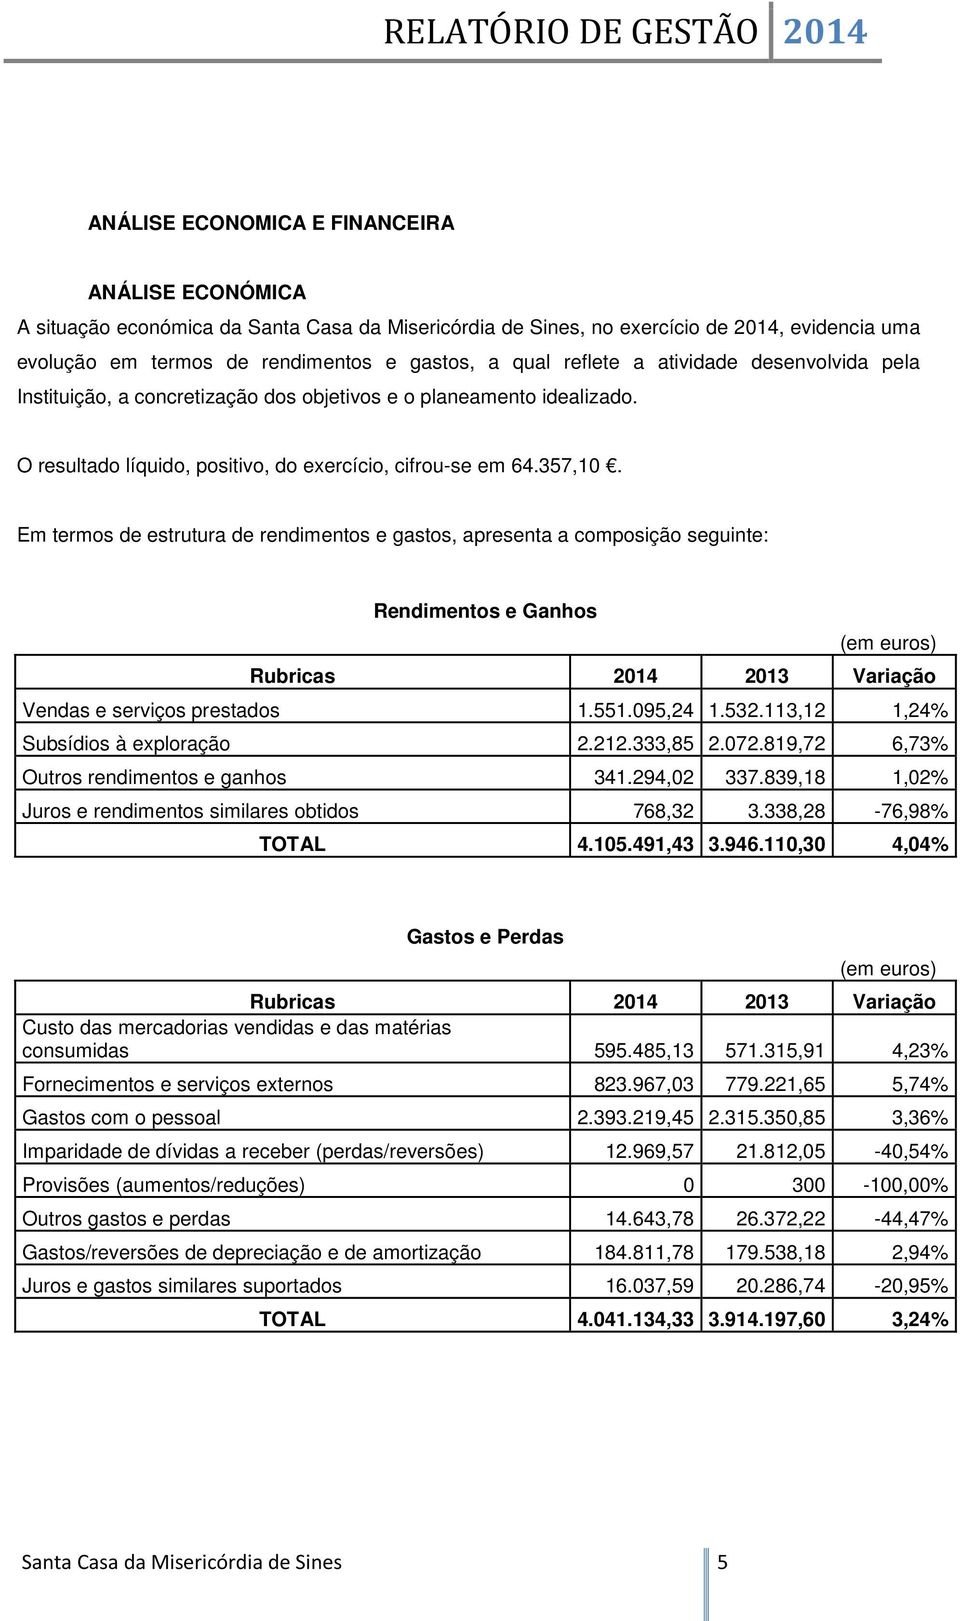 Em termos de estrutura de rendimentos e gastos, apresenta a composição seguinte: Rendimentos e Ganhos (em euros) Rubricas 2014 2013 Variação Vendas e serviços prestados 1.551.095,24 1.532.